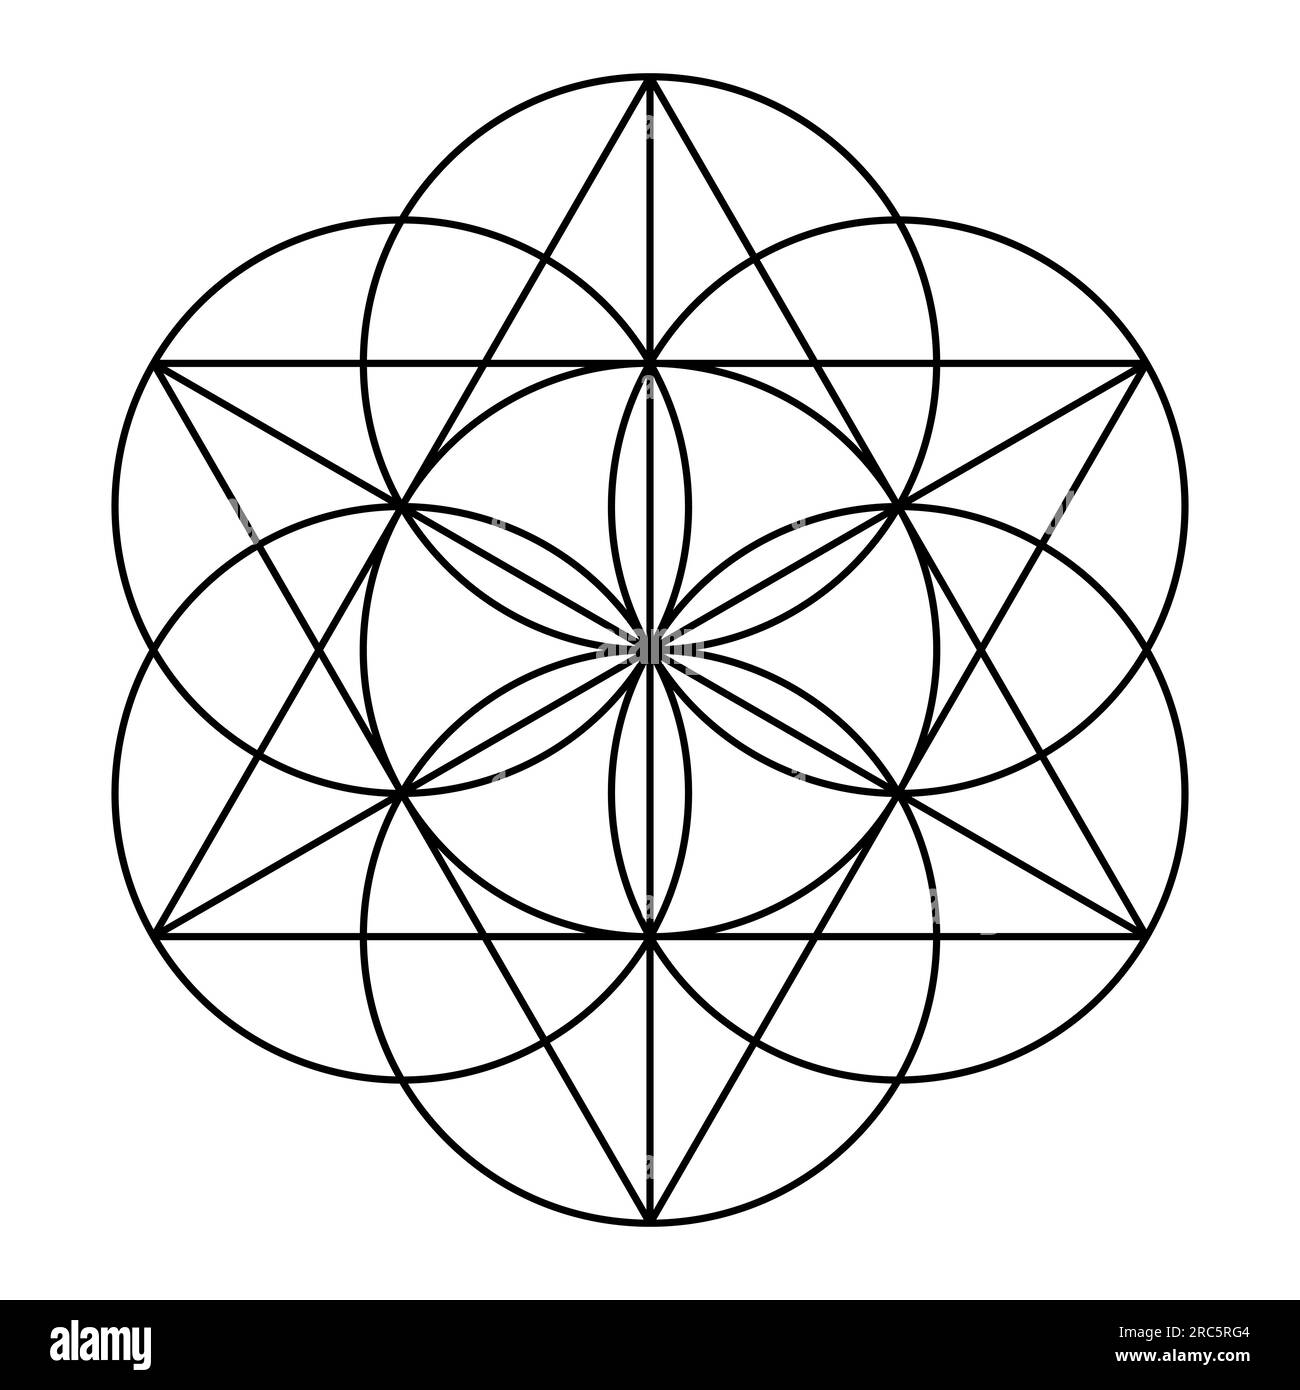 Samen des Lebens, sieben überlappende Kreise, bilden die Grundform, um ein Hexagramm (Sexagramm), eine alte geometrische Figur und Heilige Geometrie zu schaffen. Stockfoto